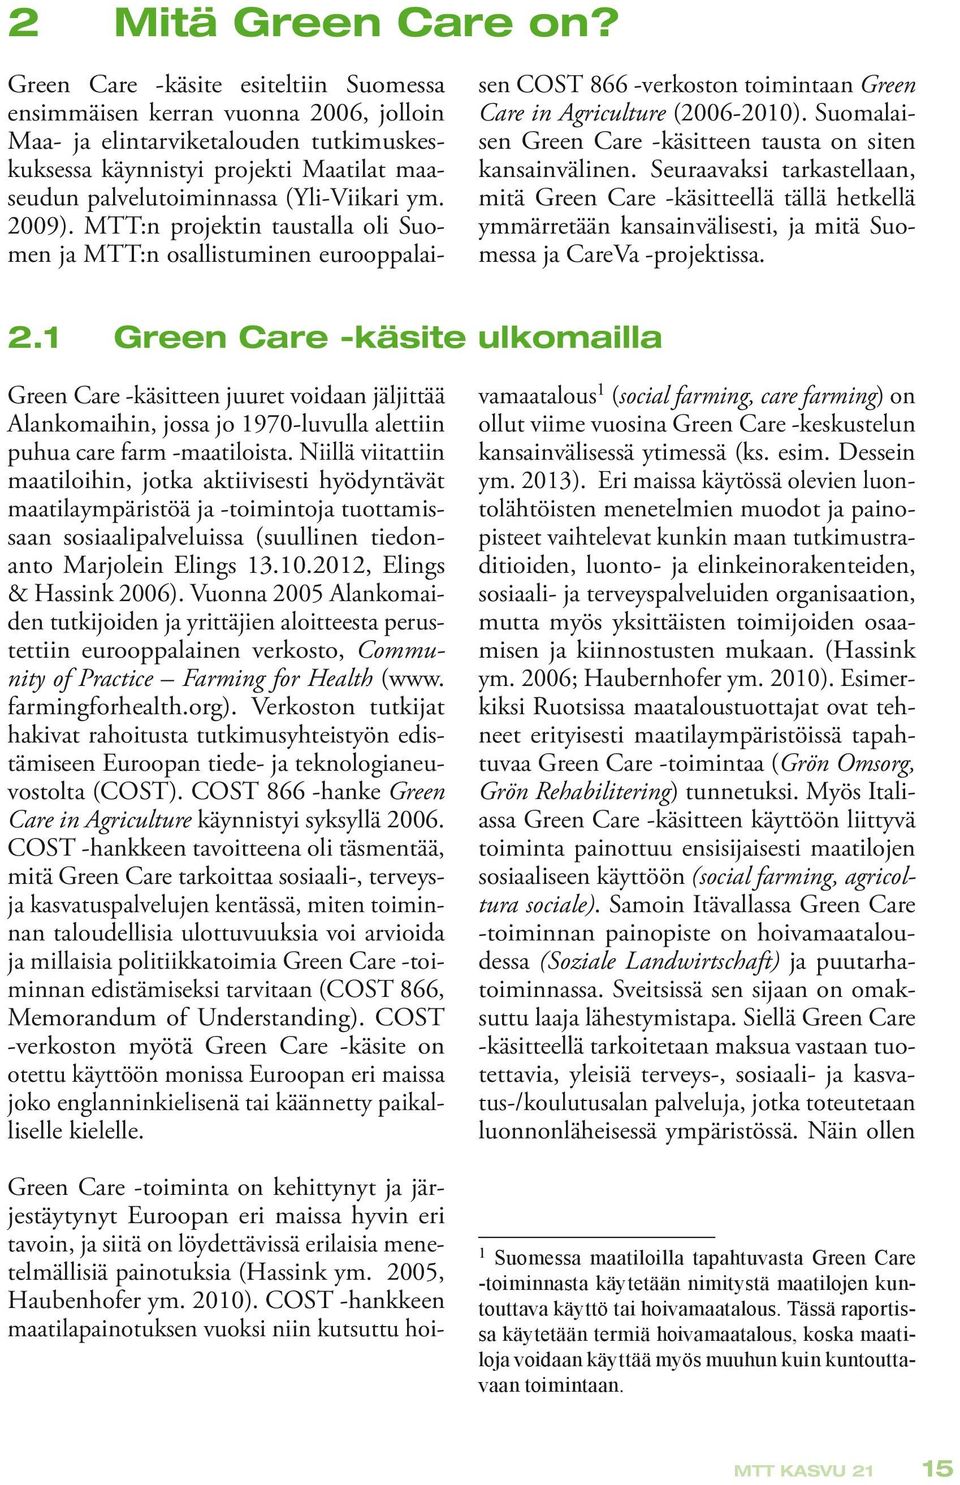 ym. 2009). MTT:n projektin taustalla oli Suomen ja MTT:n osallistuminen eurooppalai- sen COST 866 -verkoston toimintaan Green Care in Agriculture (2006-2010).